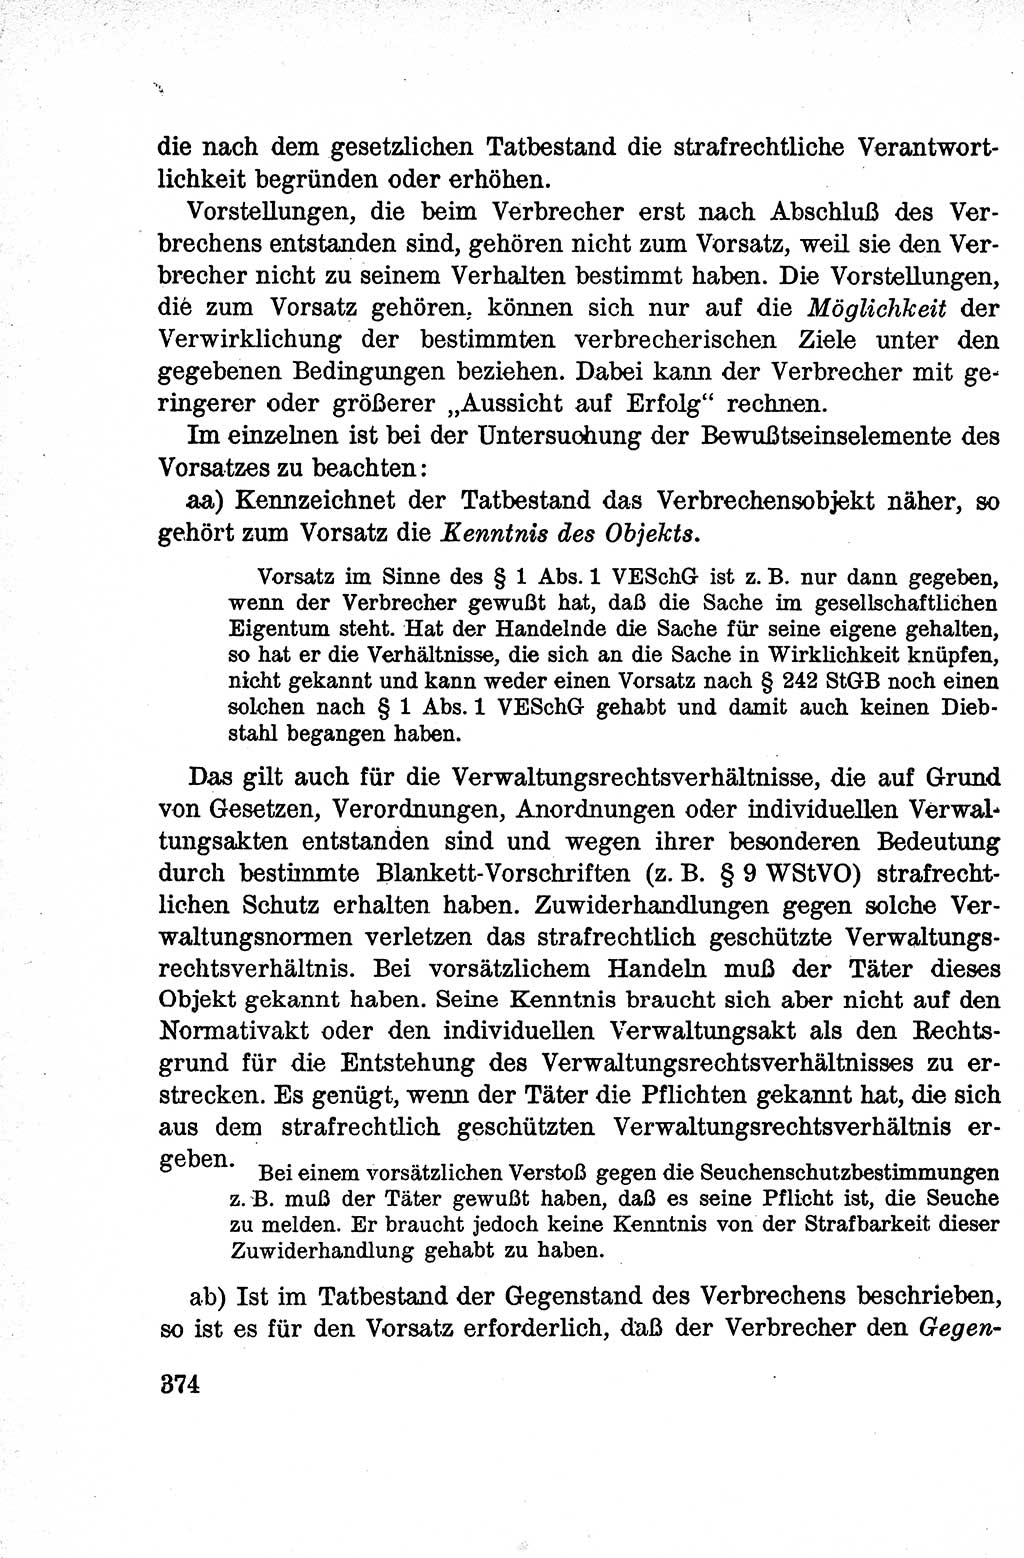 Lehrbuch des Strafrechts der Deutschen Demokratischen Republik (DDR), Allgemeiner Teil 1959, Seite 374 (Lb. Strafr. DDR AT 1959, S. 374)